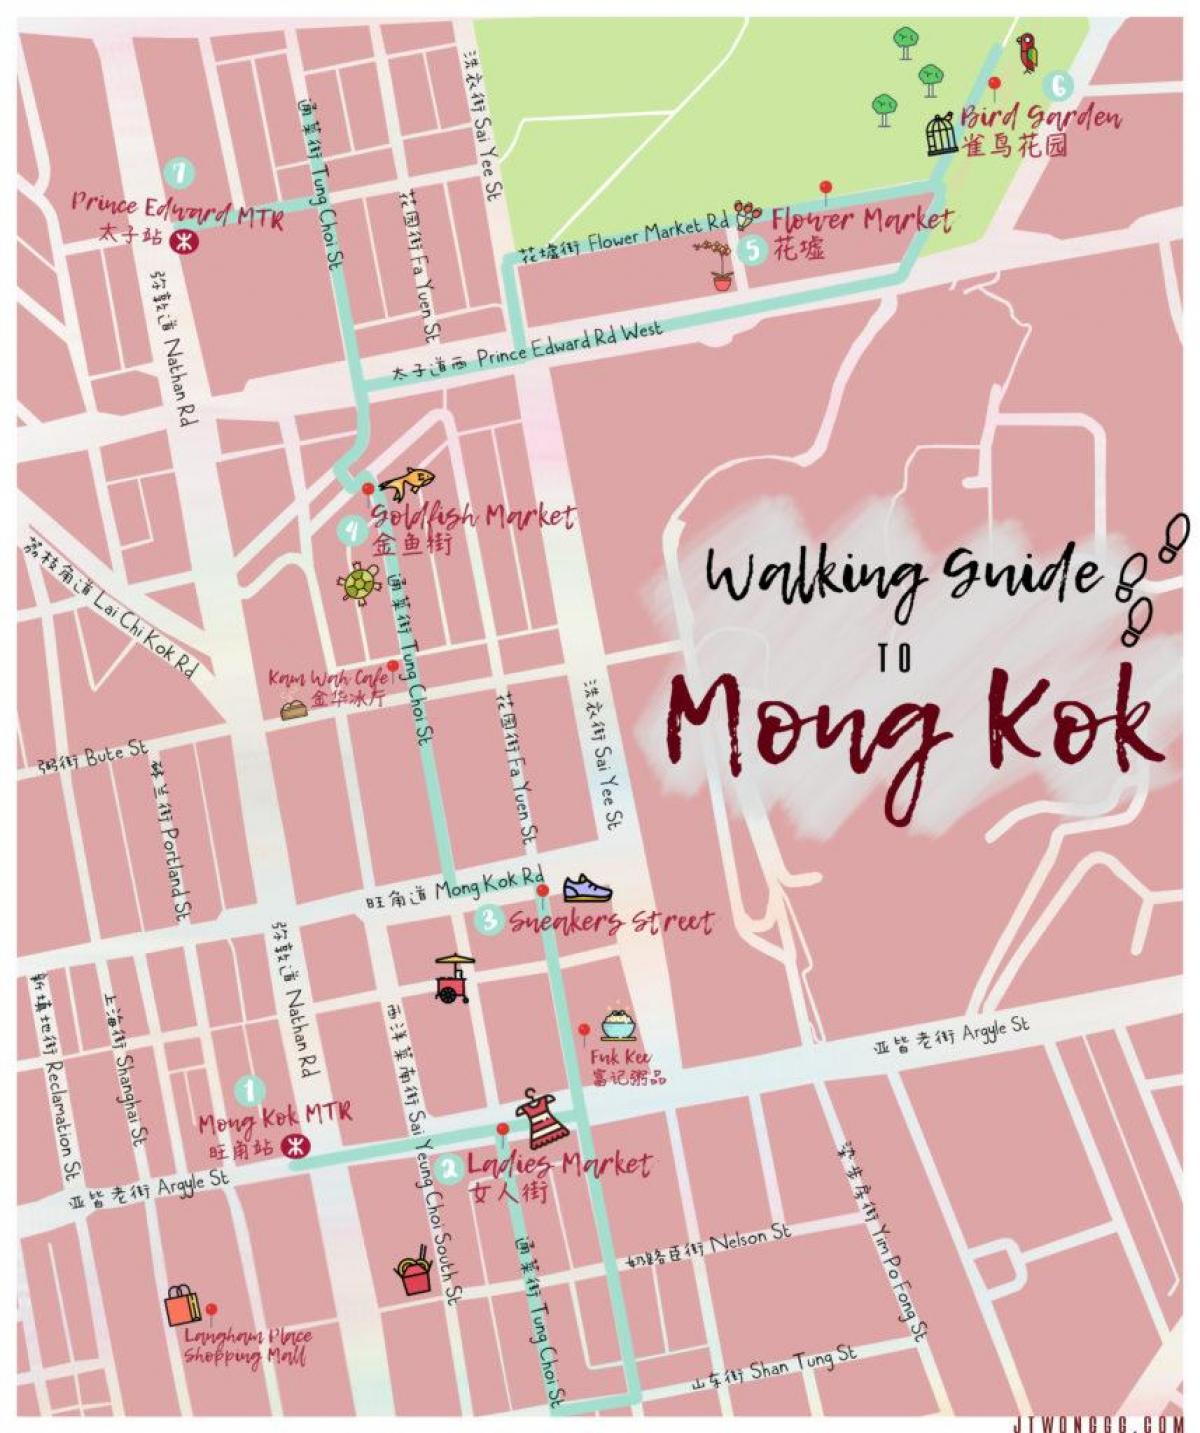 карта Монг Кок Хонг конг